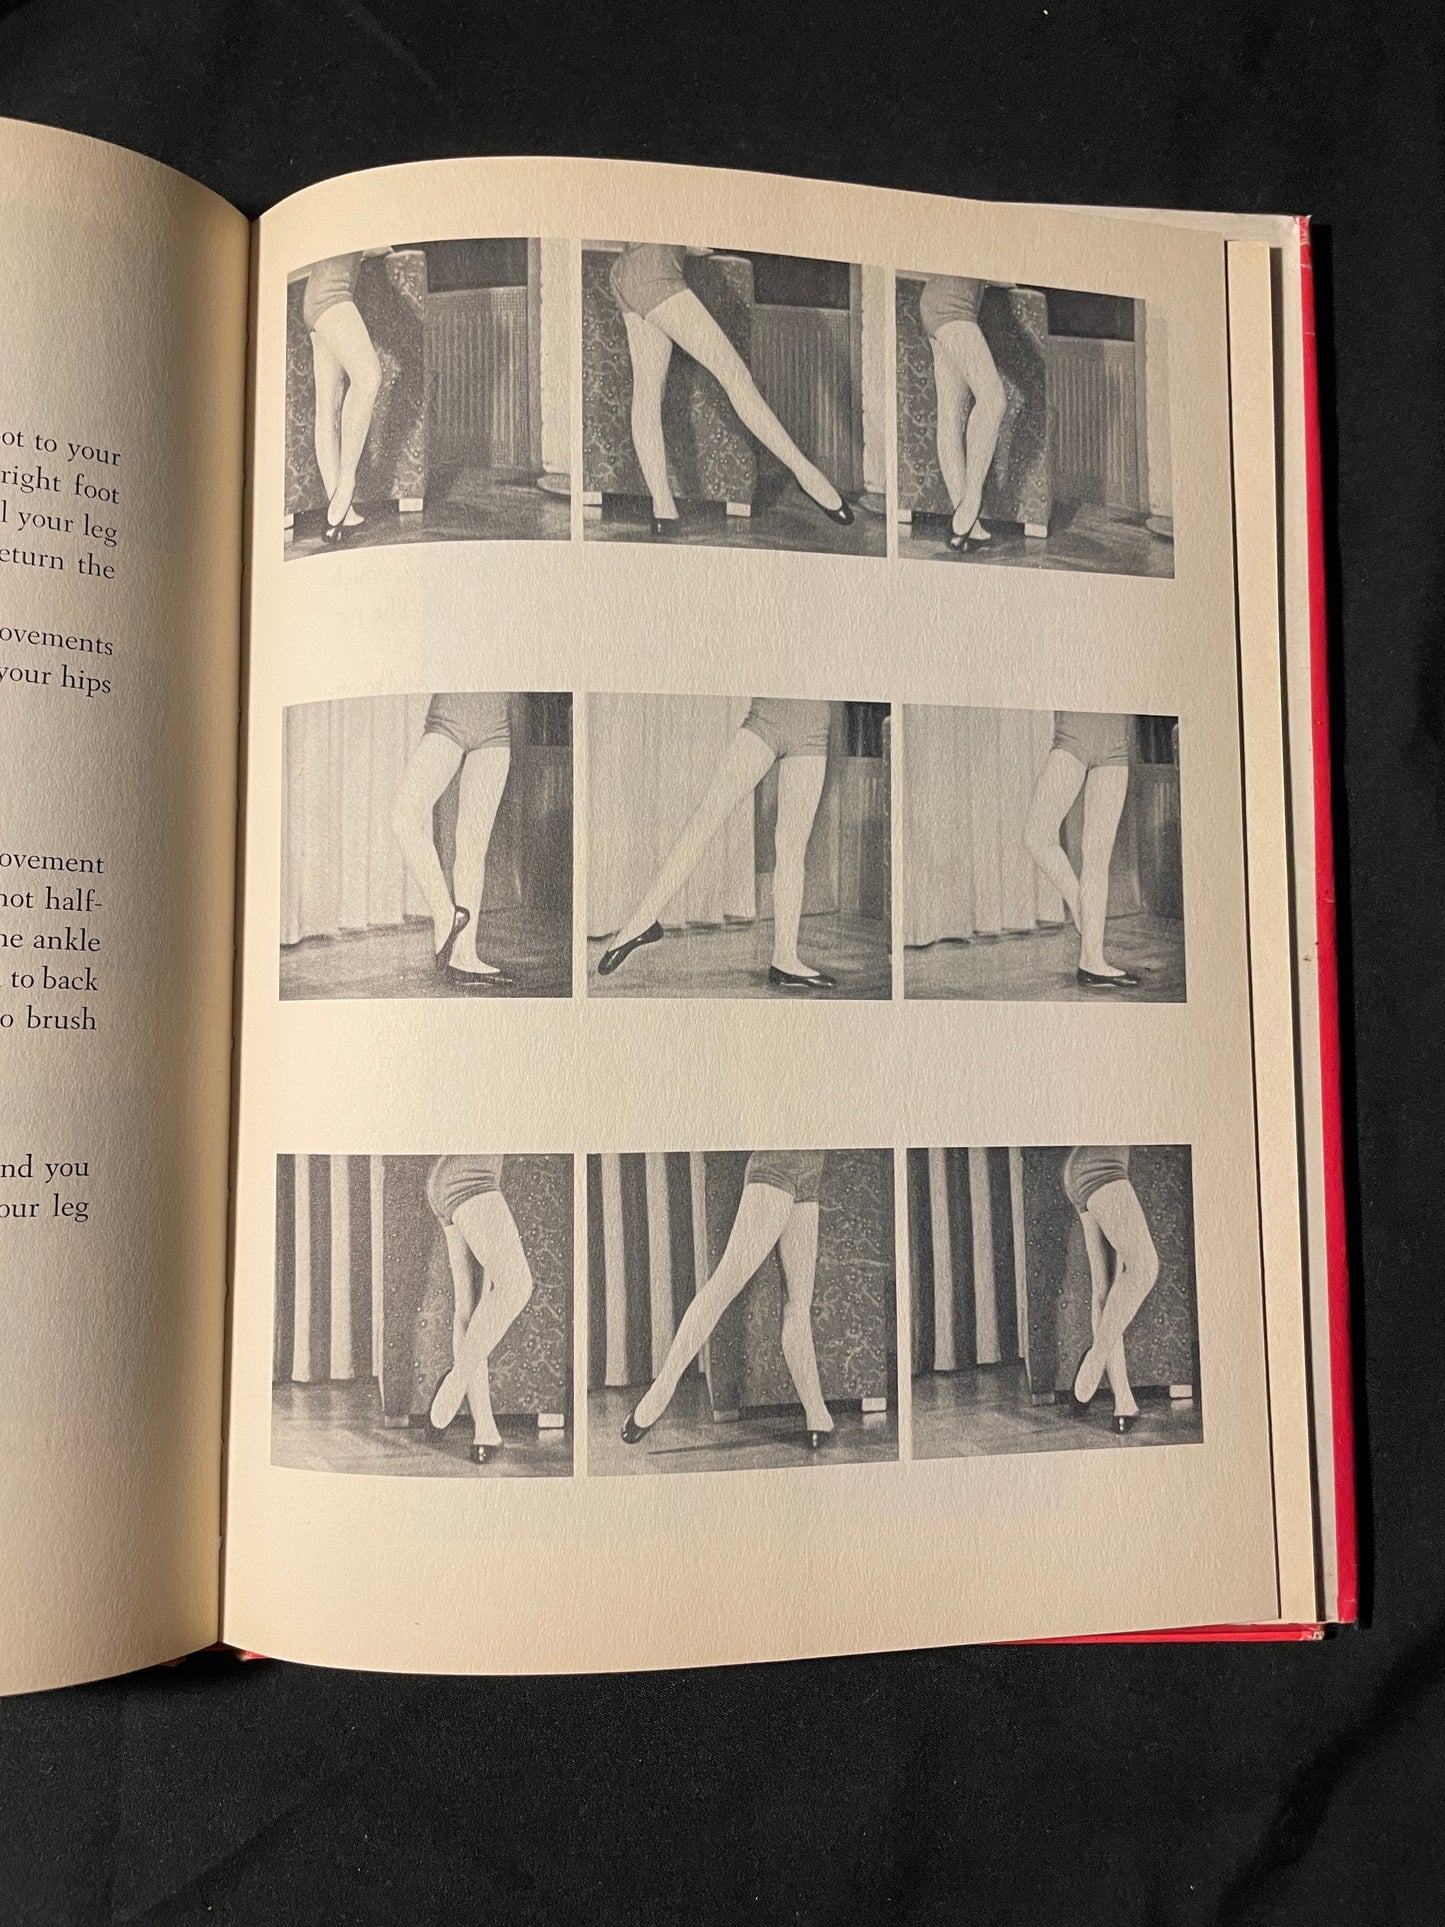 Fun with Ballet: A Beginner's Book for Future Ballerinas